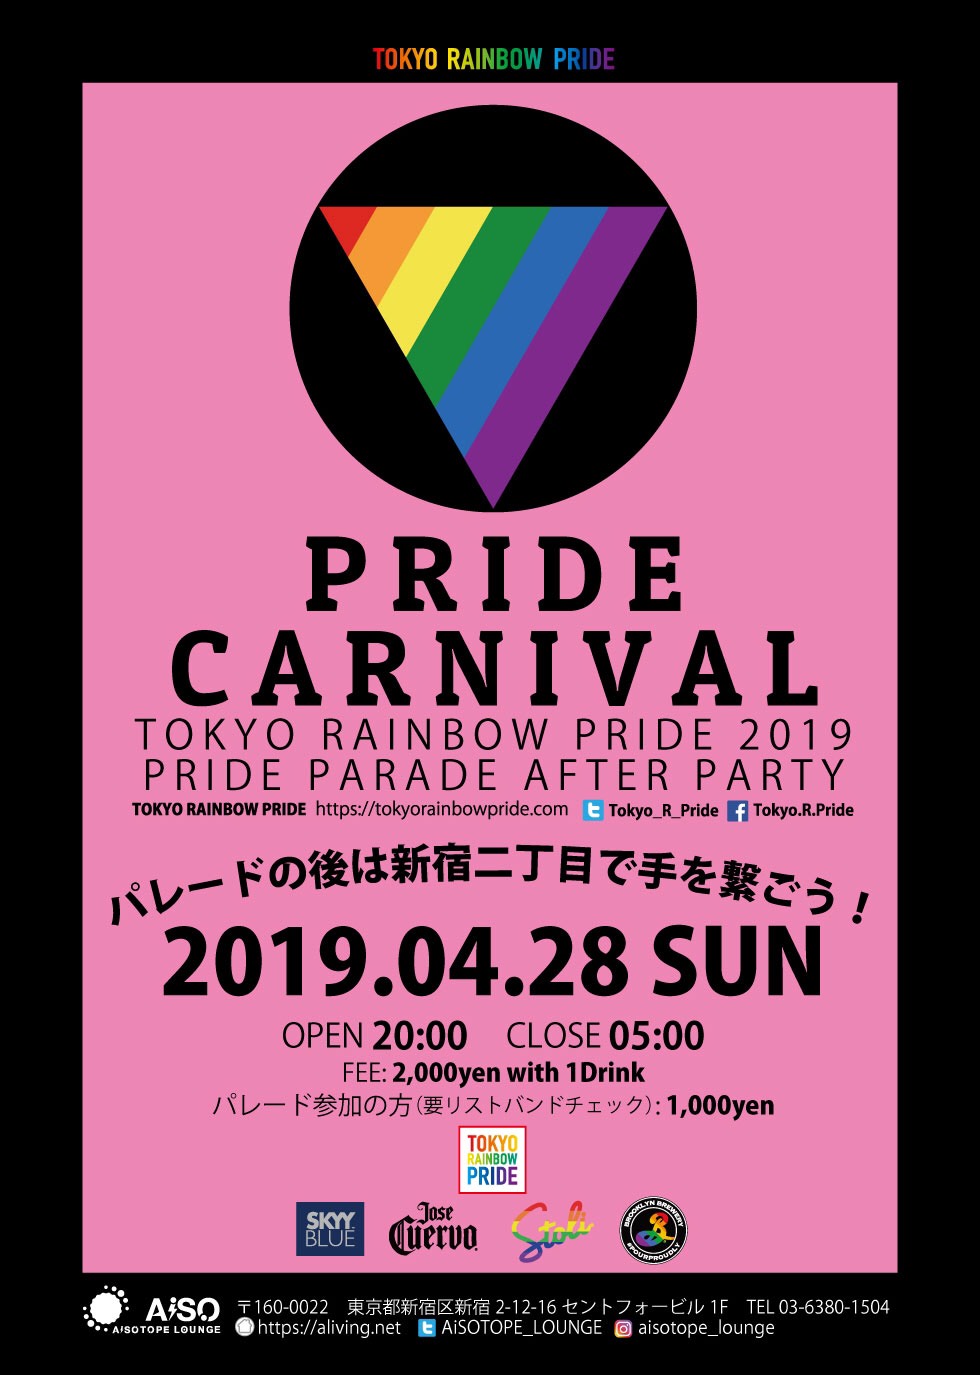 PRIDE CARNIVAL - TOKYO RAINBOW PRIDE 2019 PRIDE PARADE AFTER PARTY